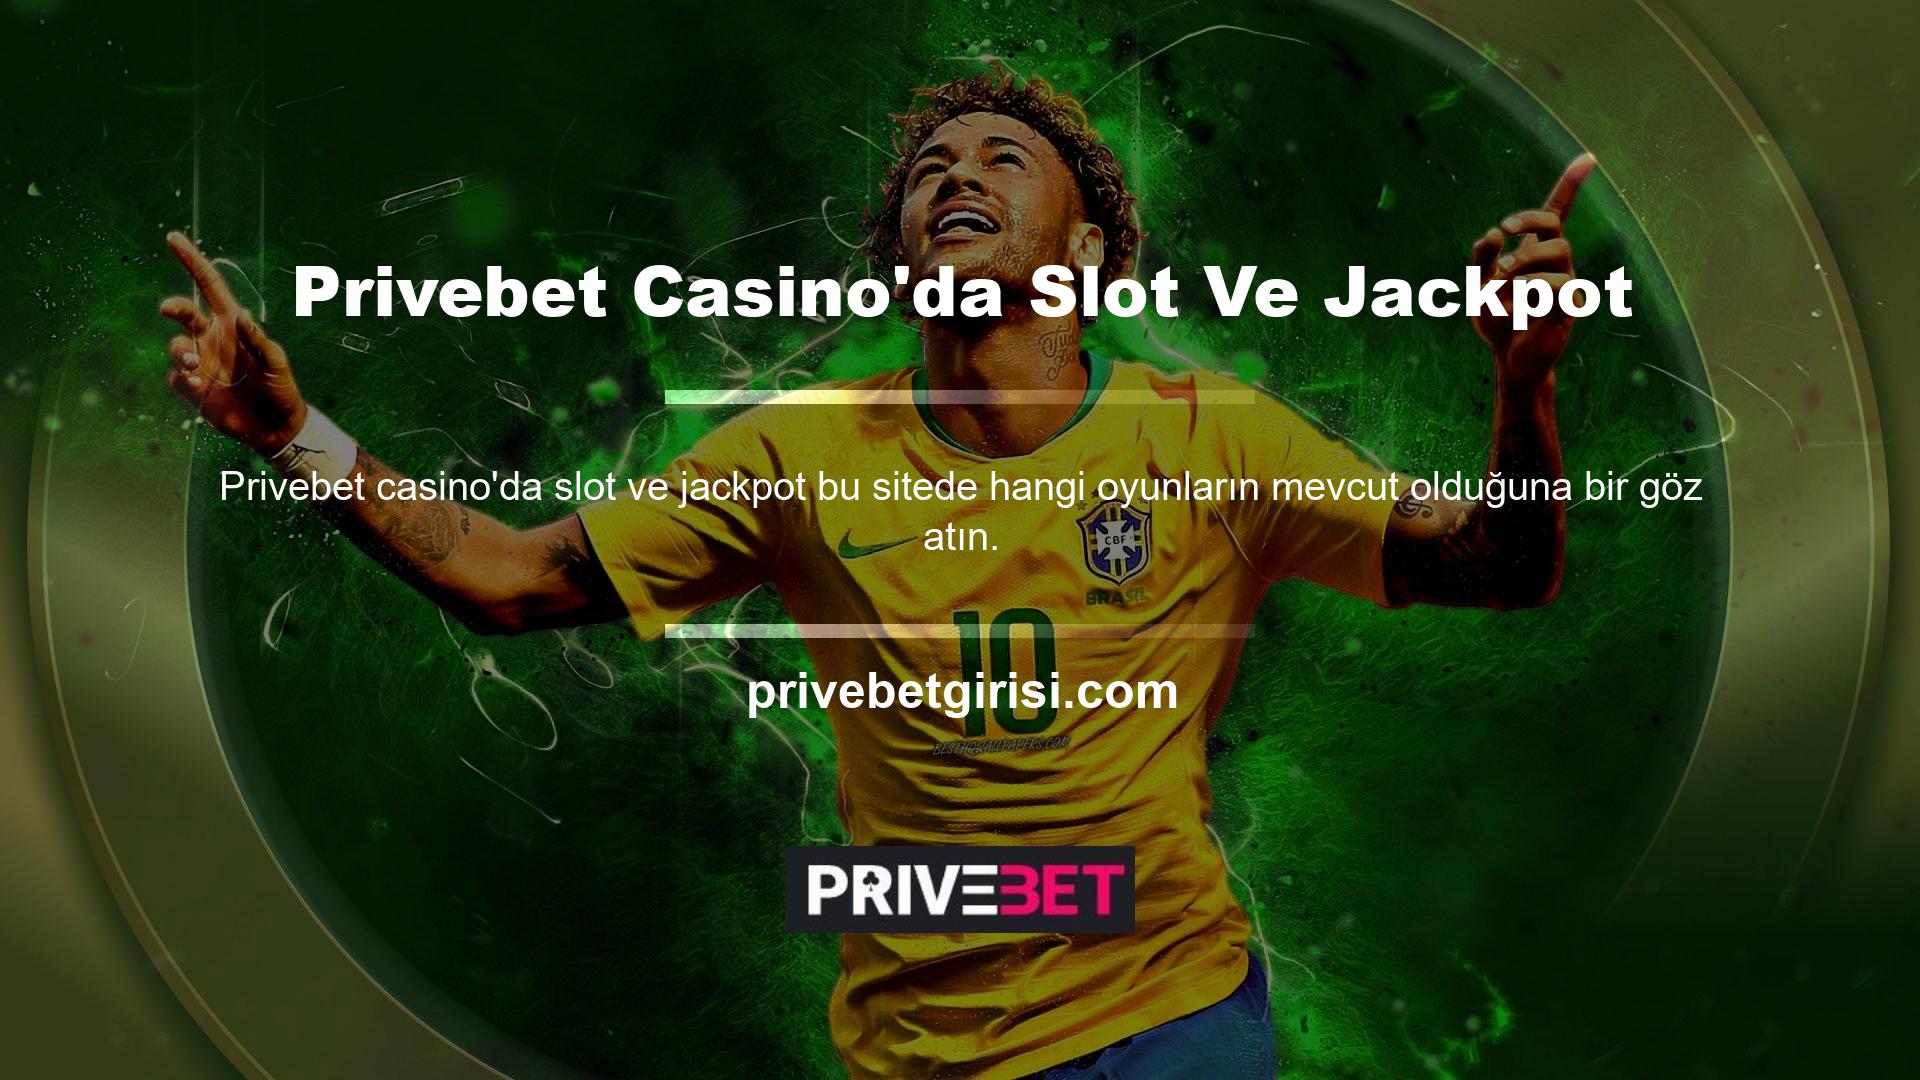 Privebet Casino'nun Mobil Slot Üyeliği Casino Slot'ları sitede en fazla oyunu barındırmaktadır